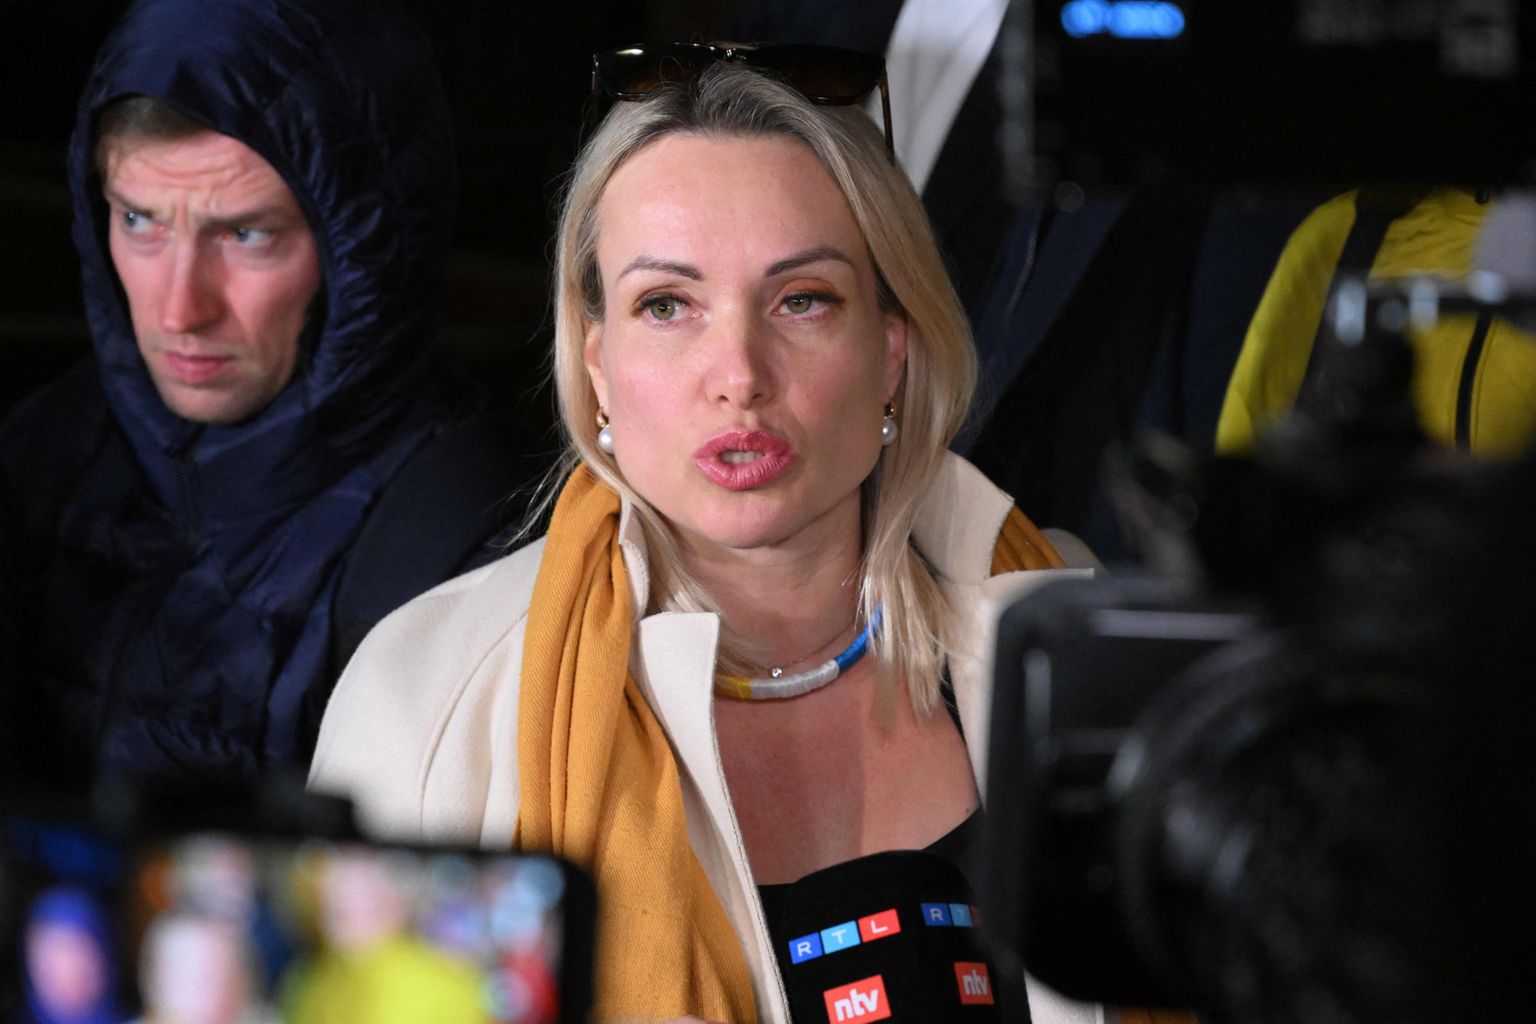 Venemaa teleajakirjanik Marina Ovsjannikova 15. märtsil 2022 lahkumas Moskva Ostankino piirkonnakohtust ja andmas meediale kommentaare. Kohus määras talle protestiseaduse rikkumise eest 30 000 rubla (247 euro) suuruse trahvi